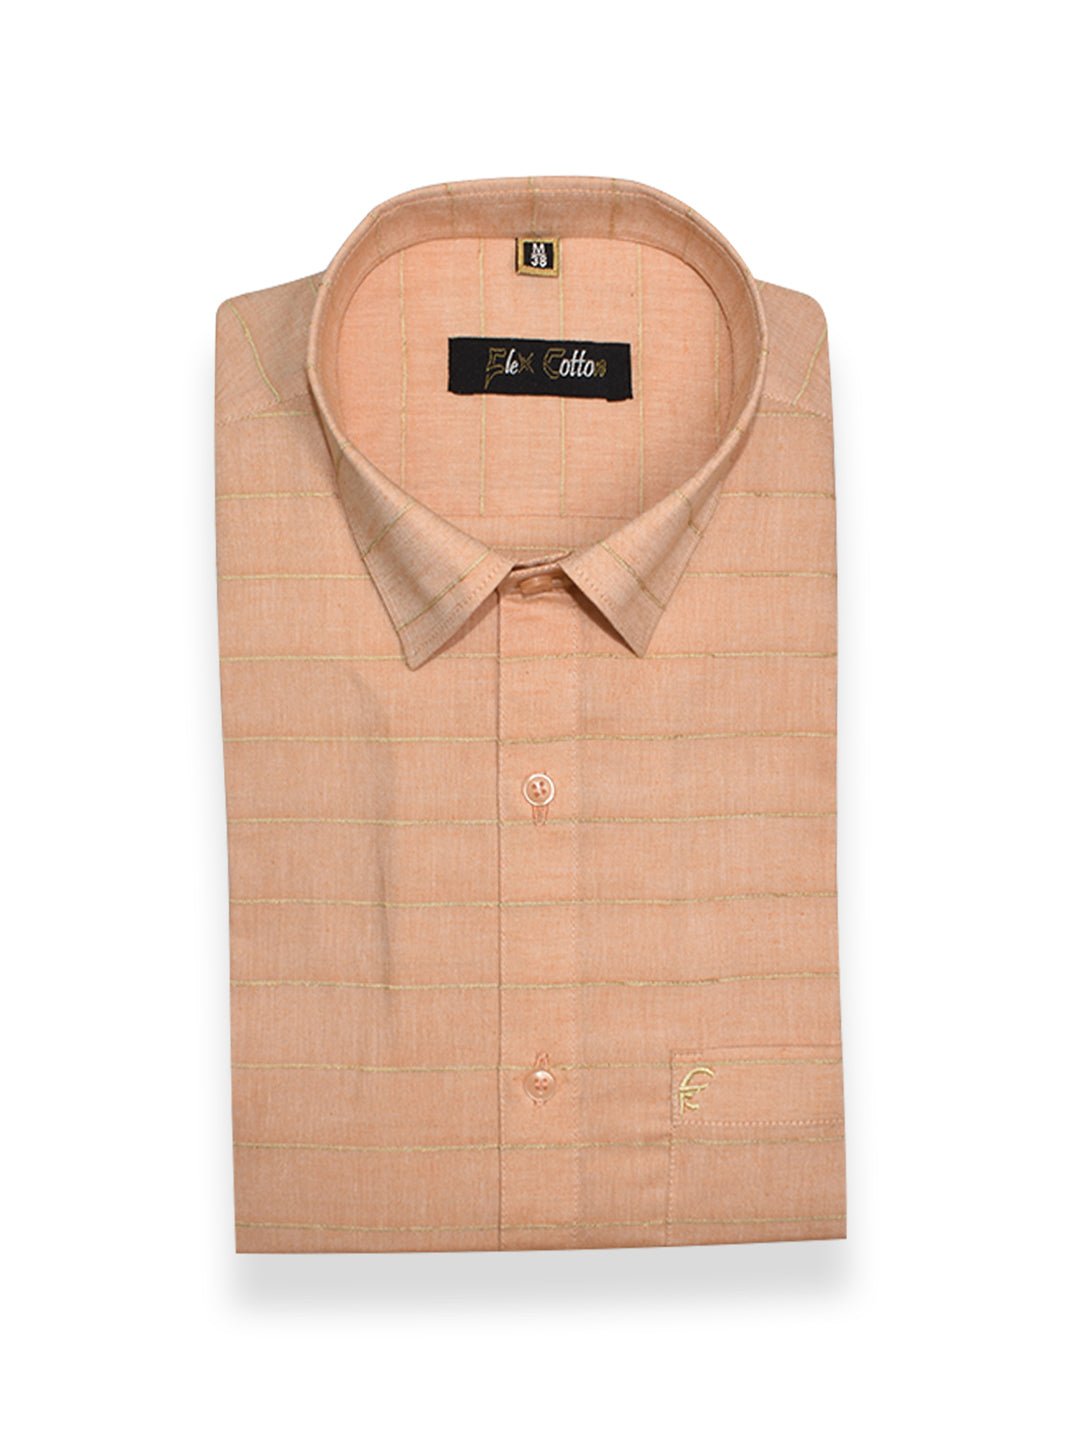 Apricot Orange Color 3D Lining Cotton Shirts For Men's - Punekar Cotton